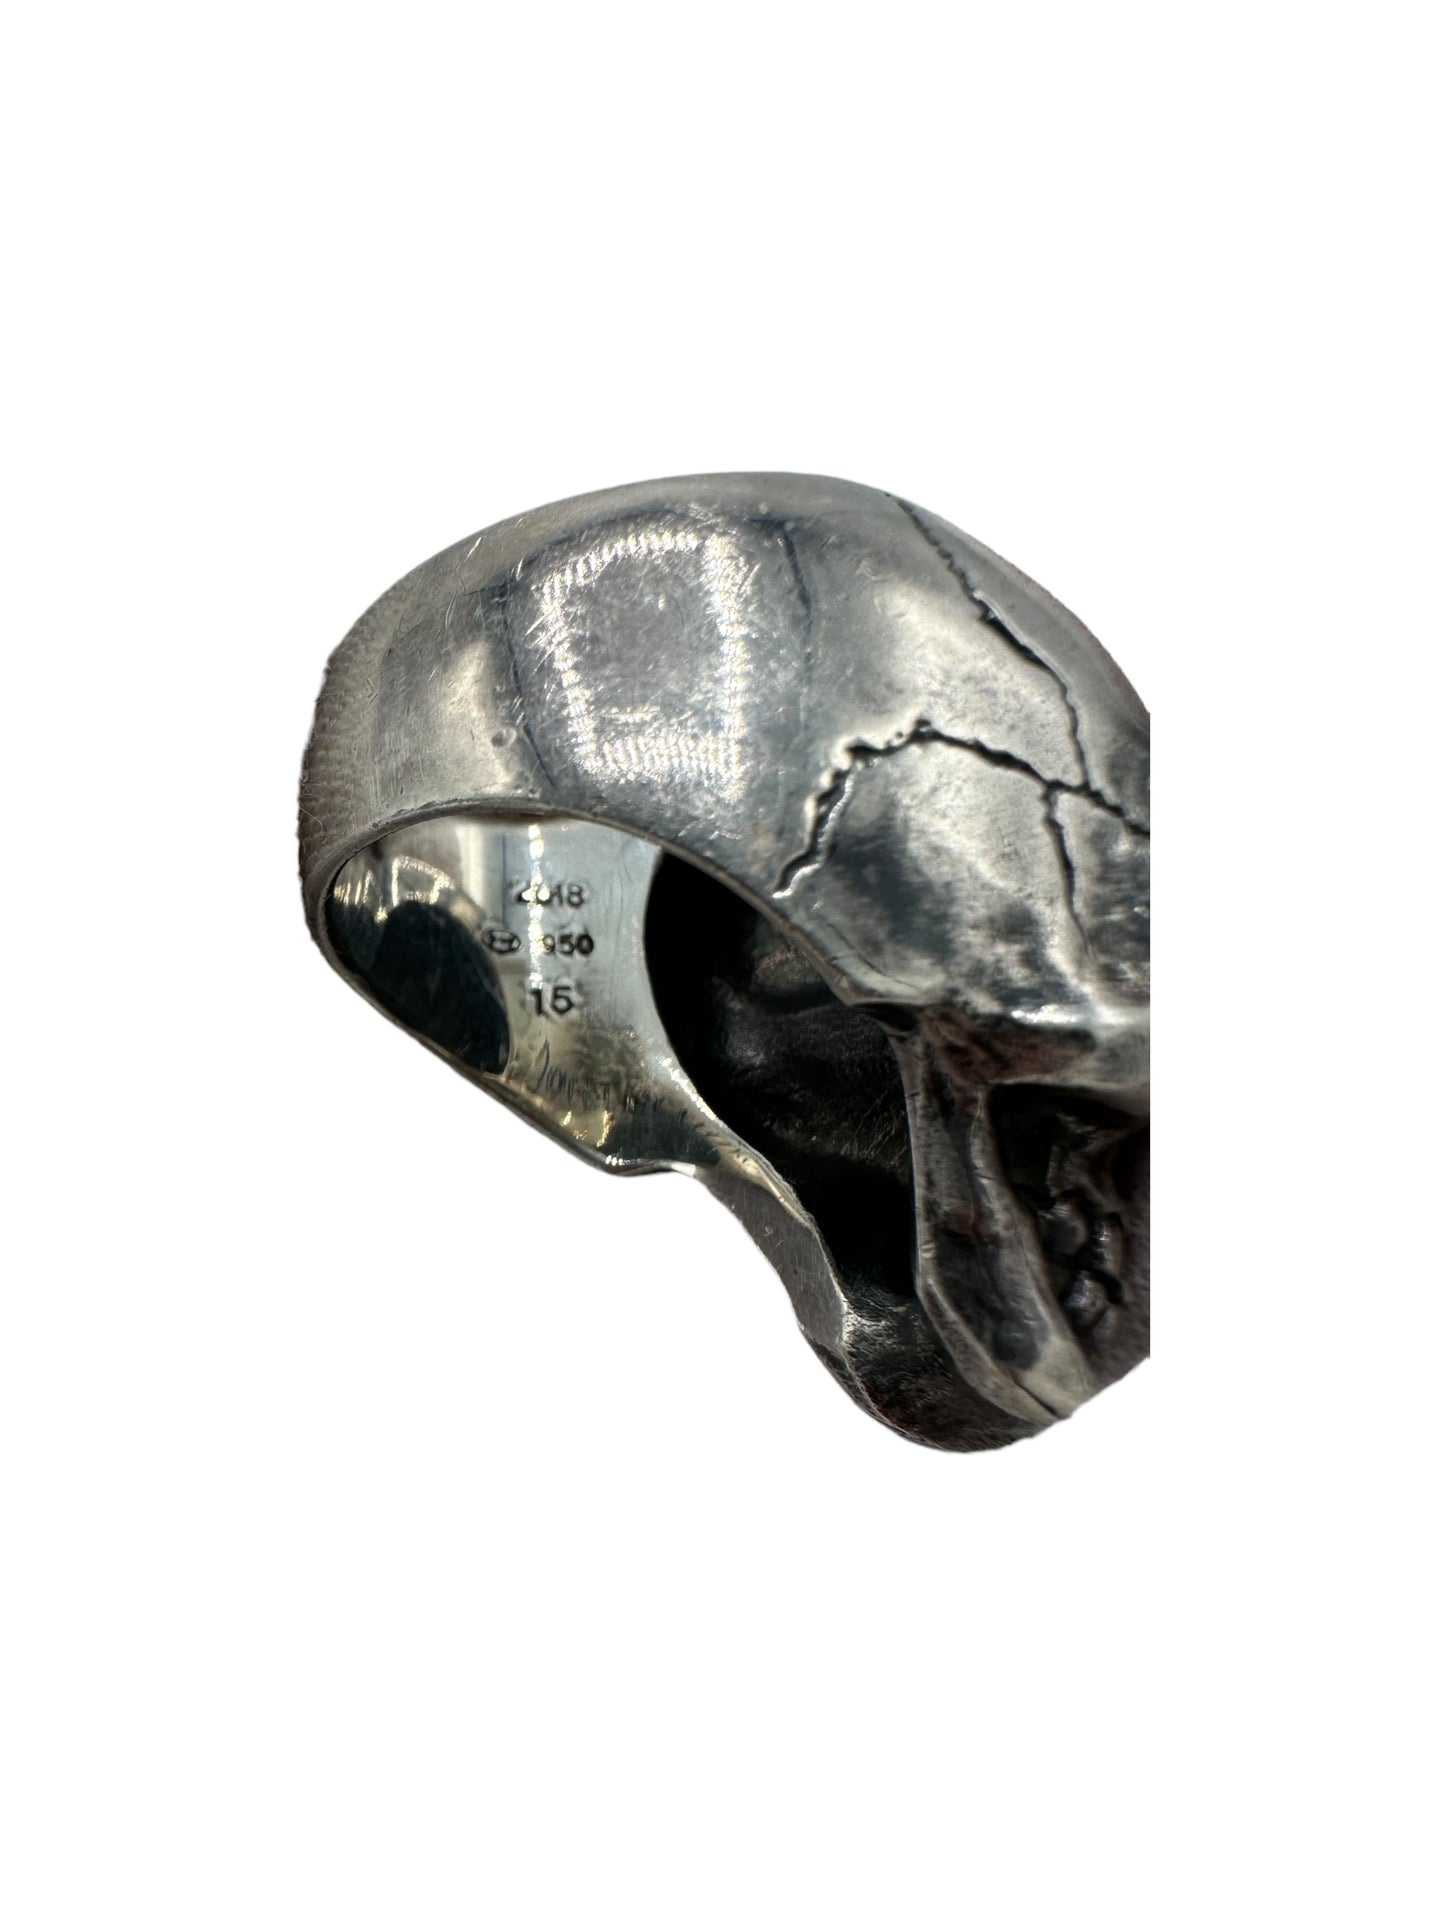 Yohji Yamamoto 950 Silver Alien Skull Ring 7.5 US